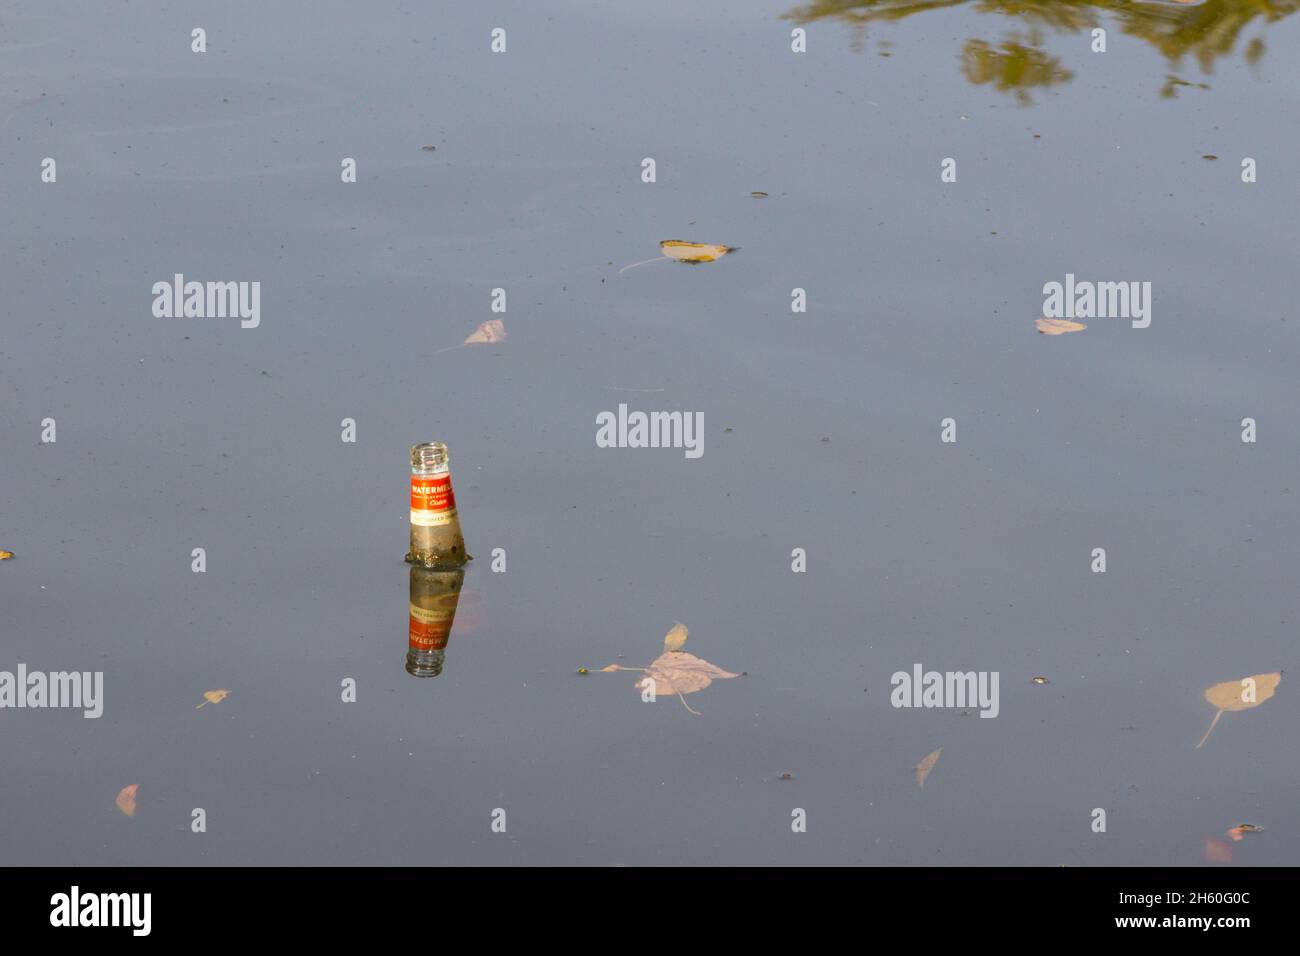 Una bottiglia vuota di sidro aromatizzata al melone Somersby gettata nell'acqua del lago galleggiante sulla superficie Foto Stock